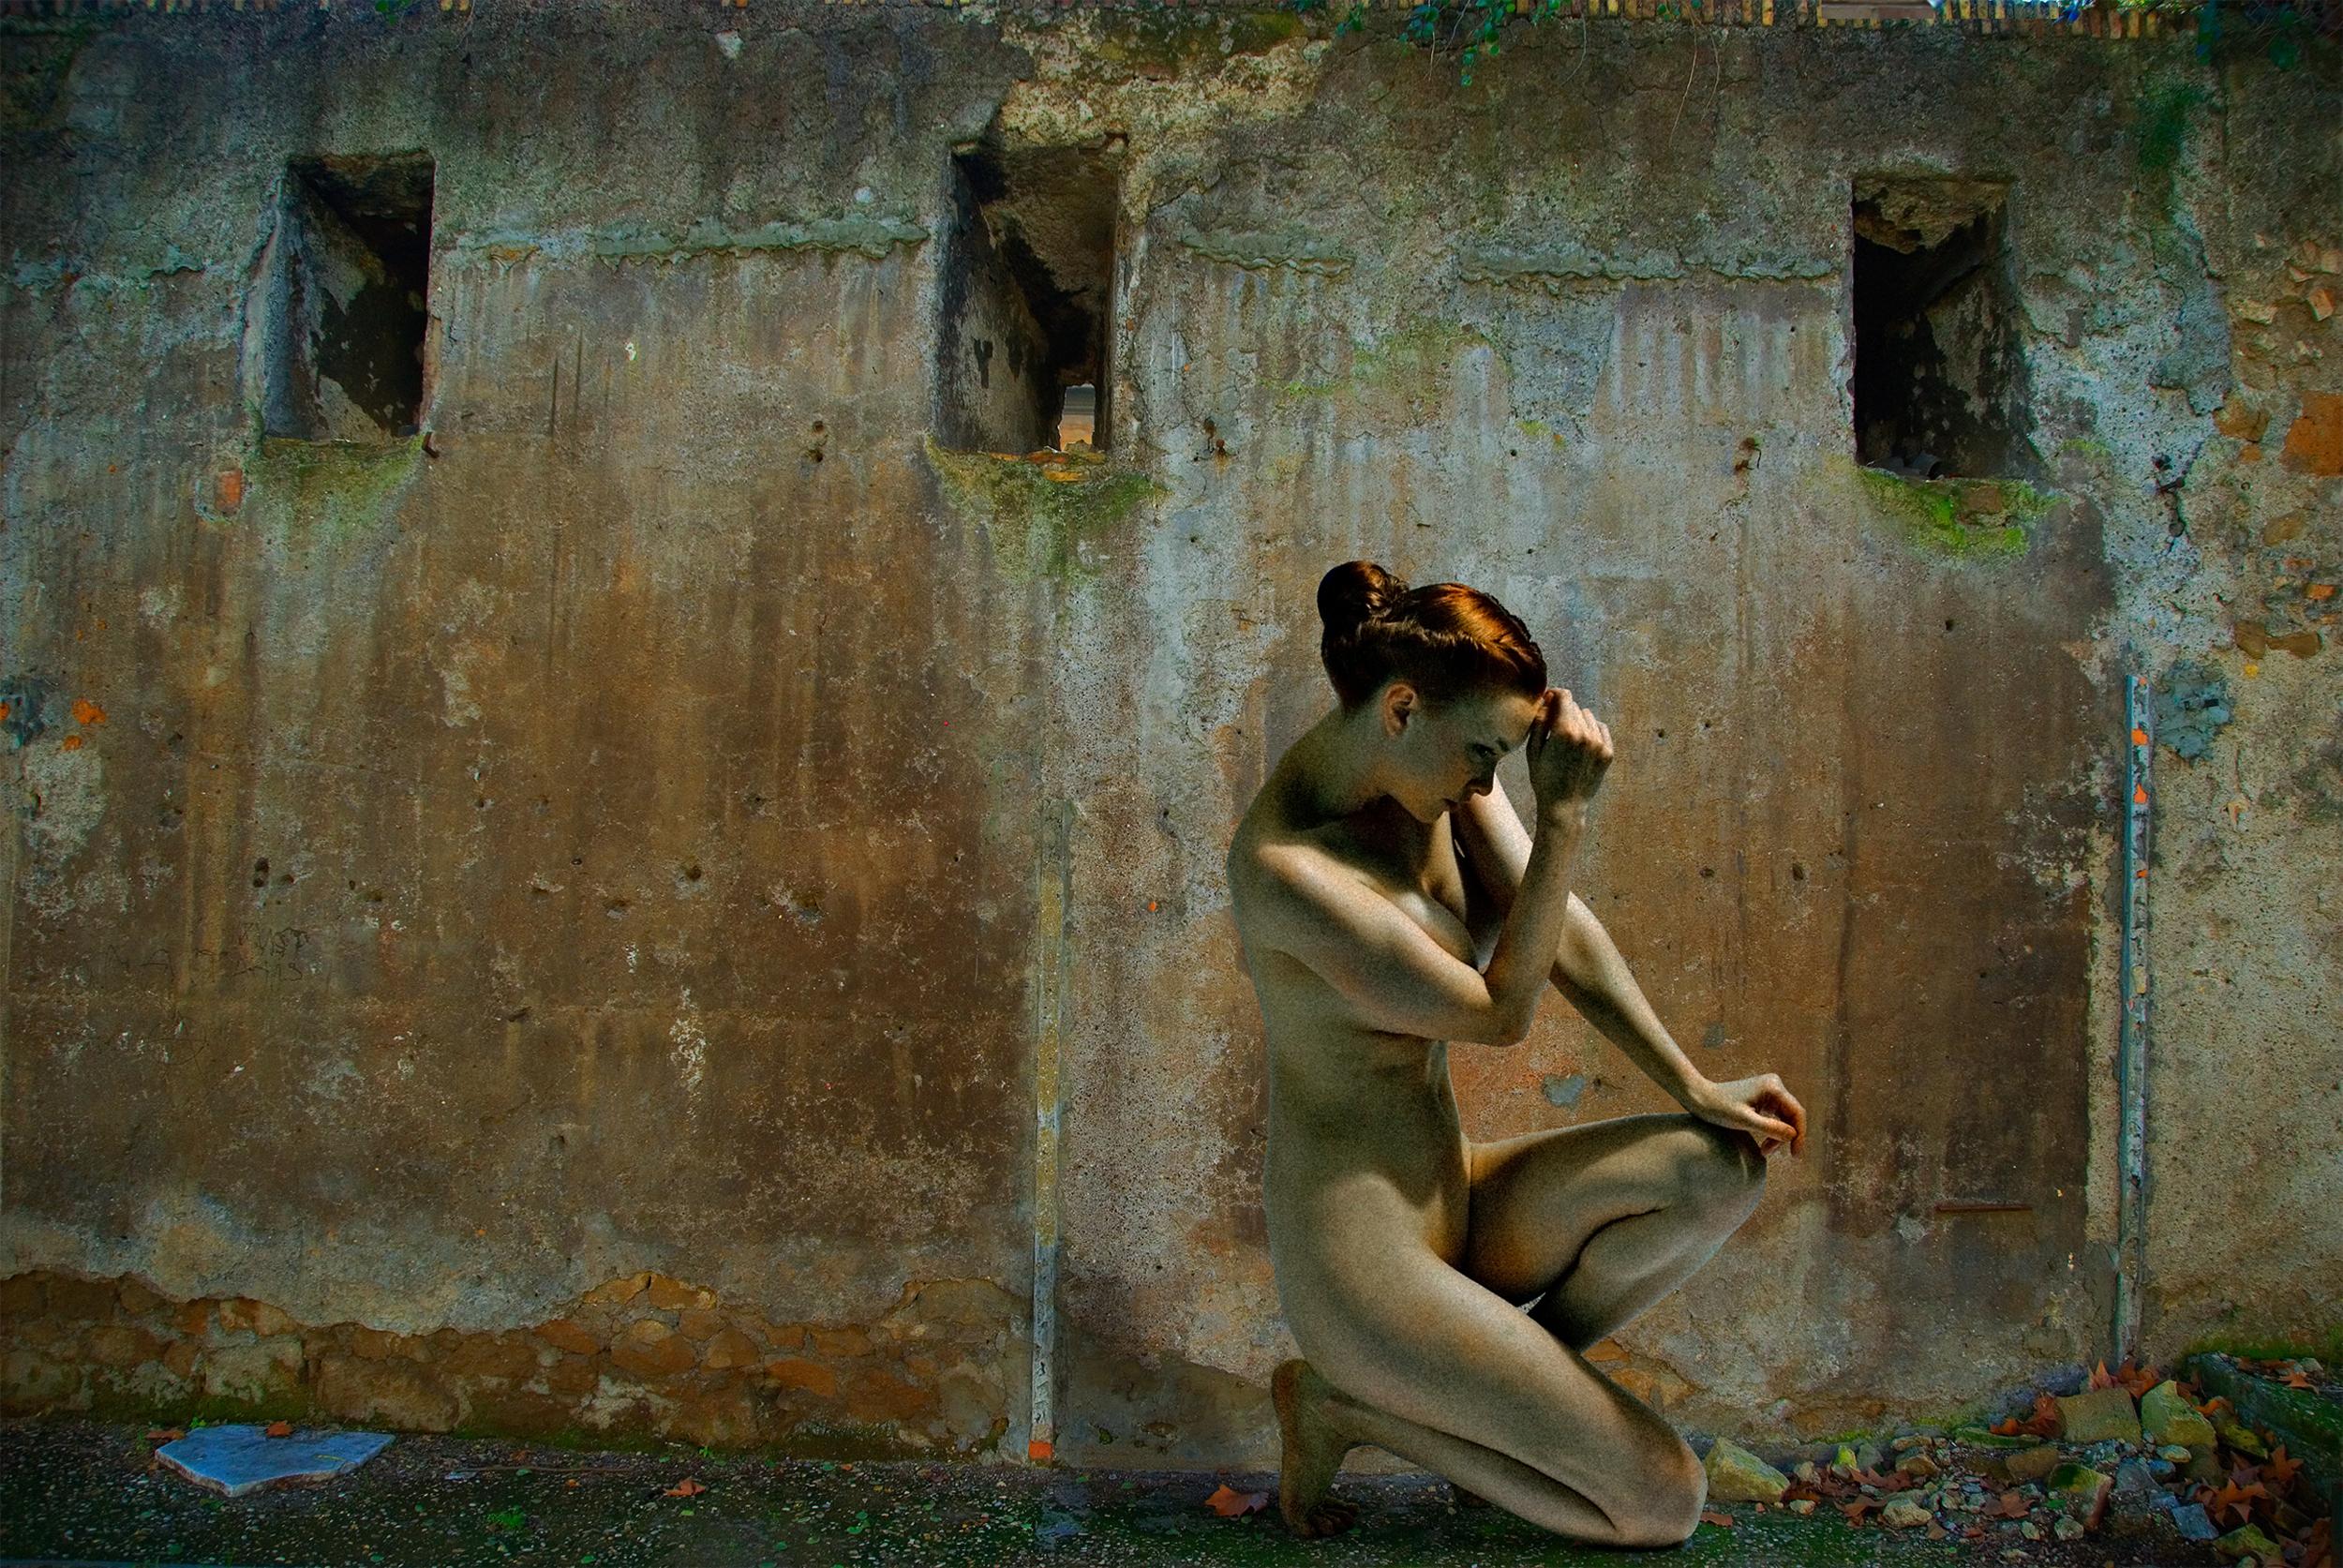 American Contemporary Photo by Michael K. Yamaoka - Beside A Roman Wall 